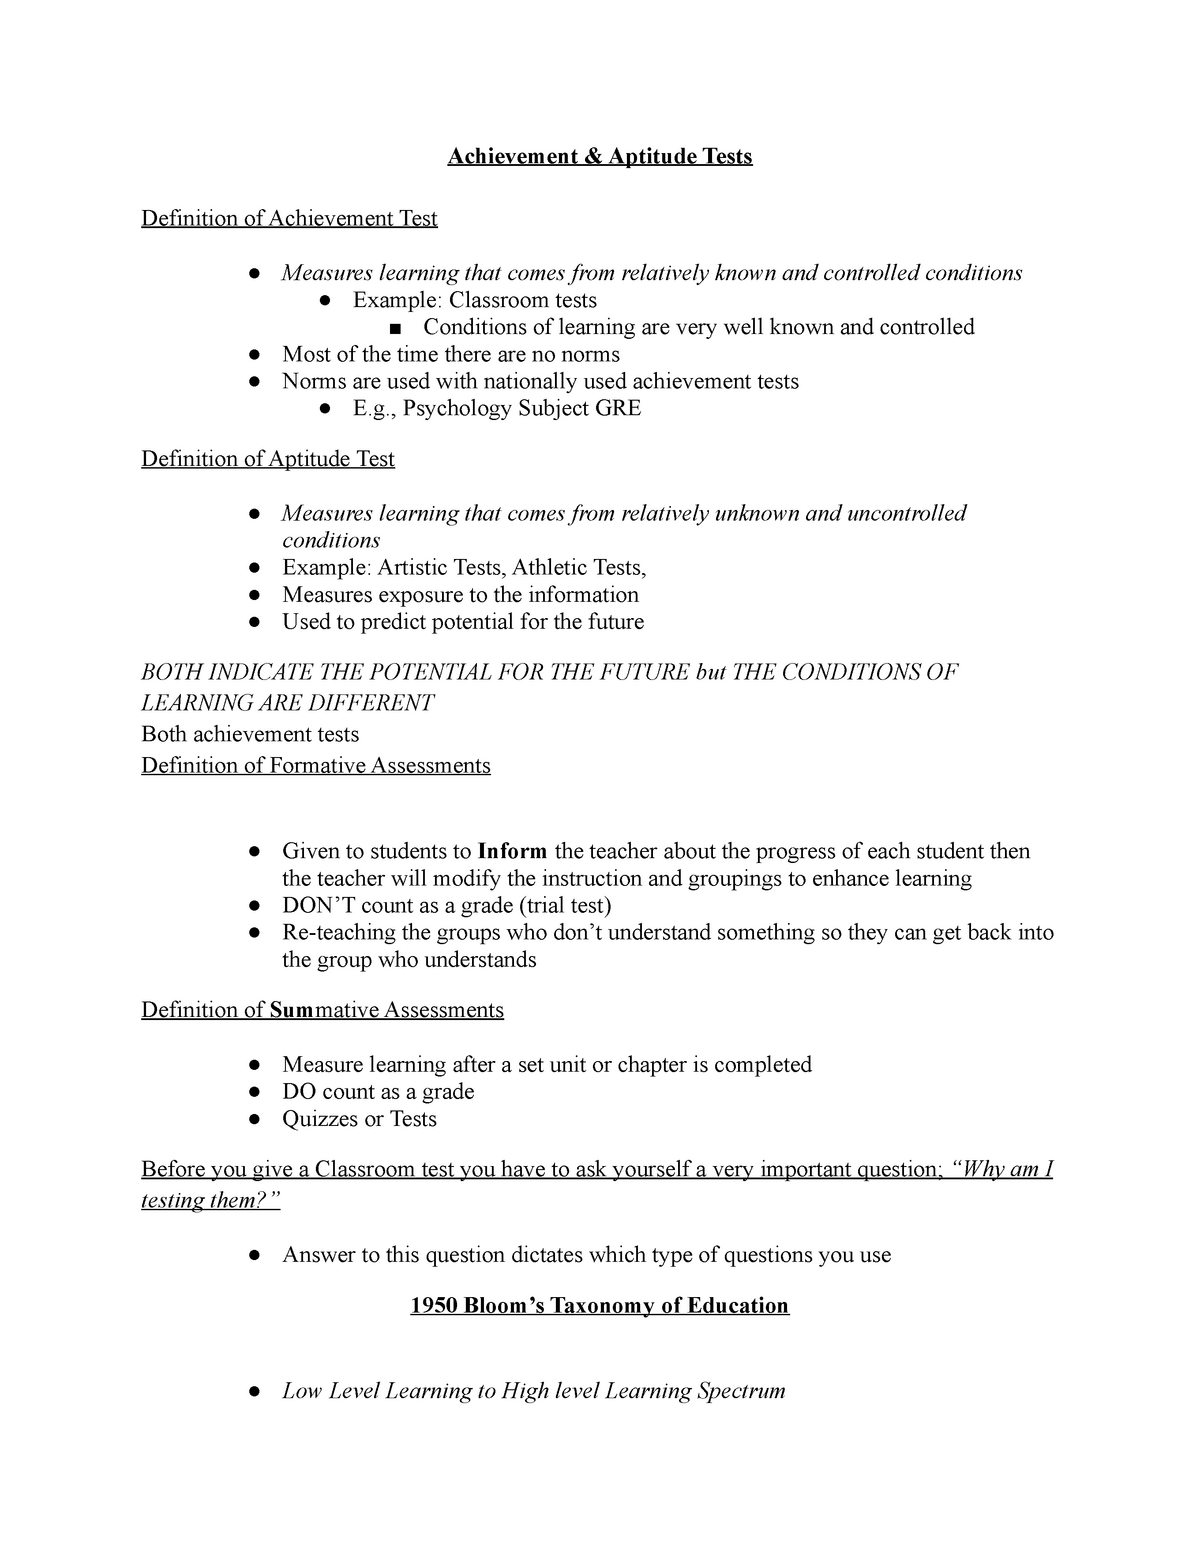 PSY 431 Exam 5 Notes Achievement Aptitude Tests Definition Of Achievement Test Measures